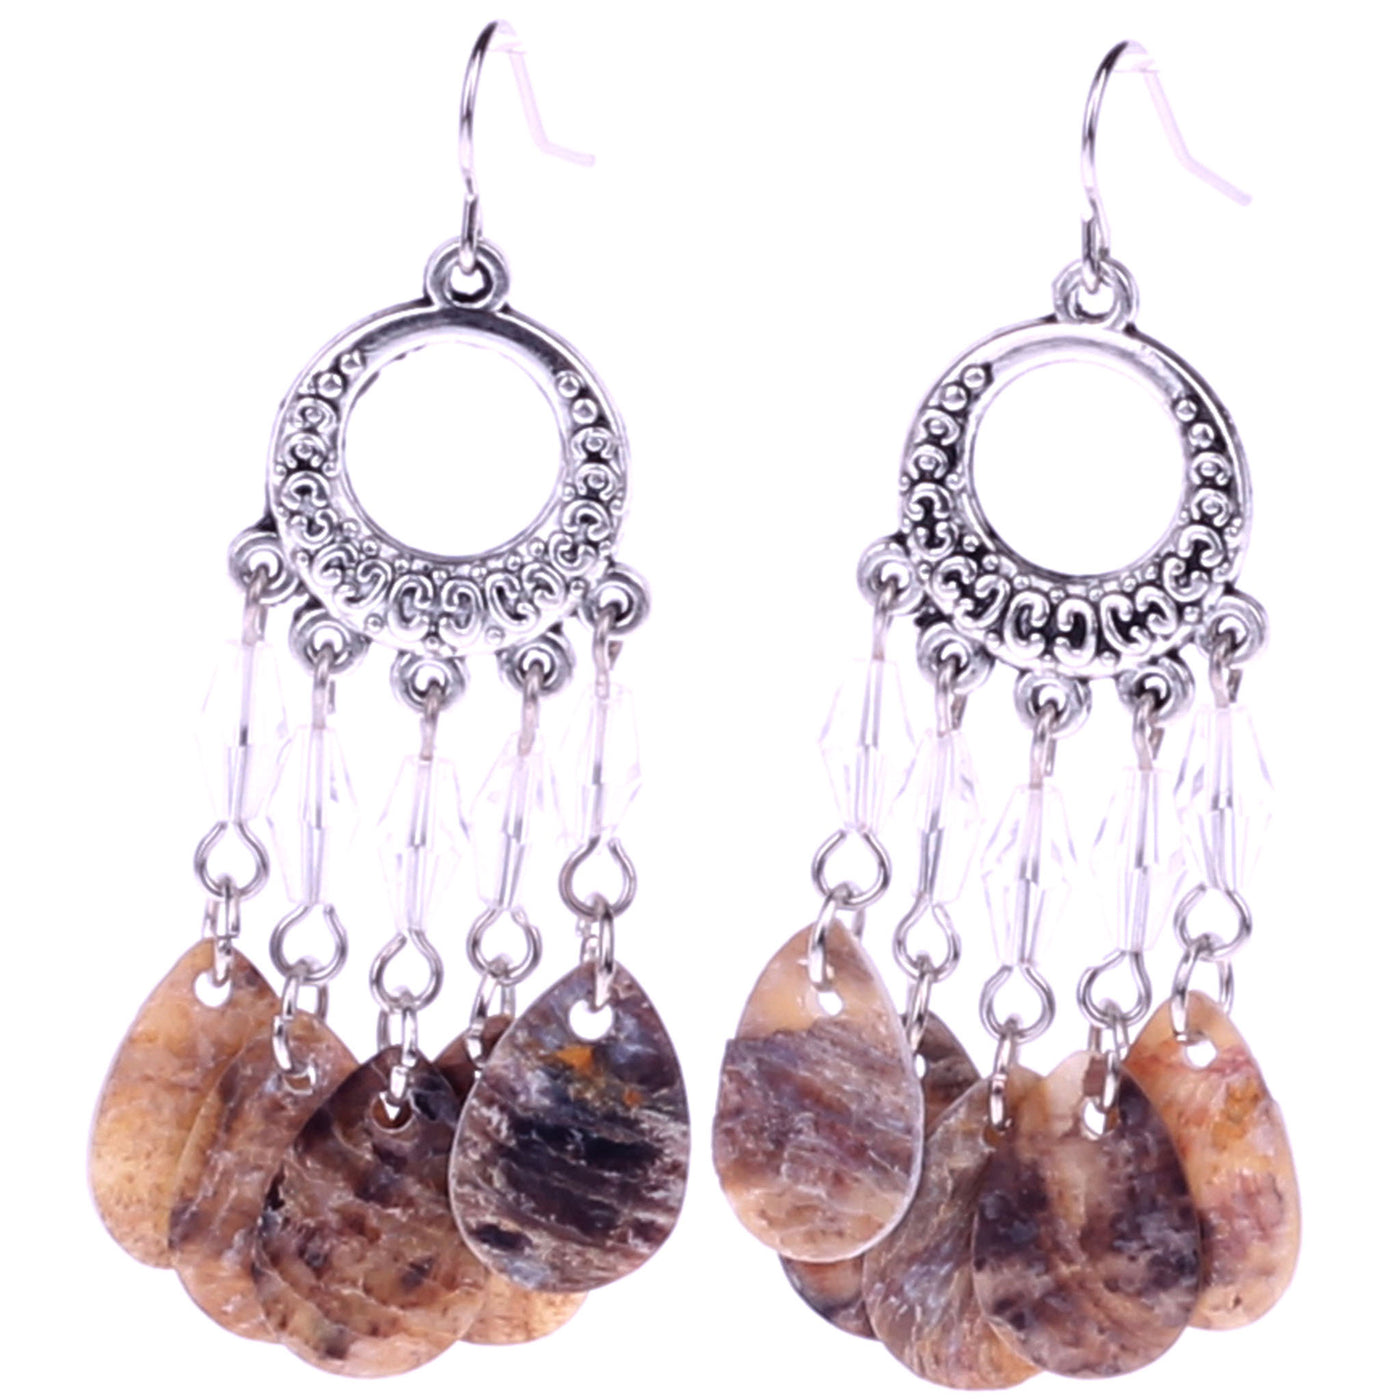 Mussel earrings